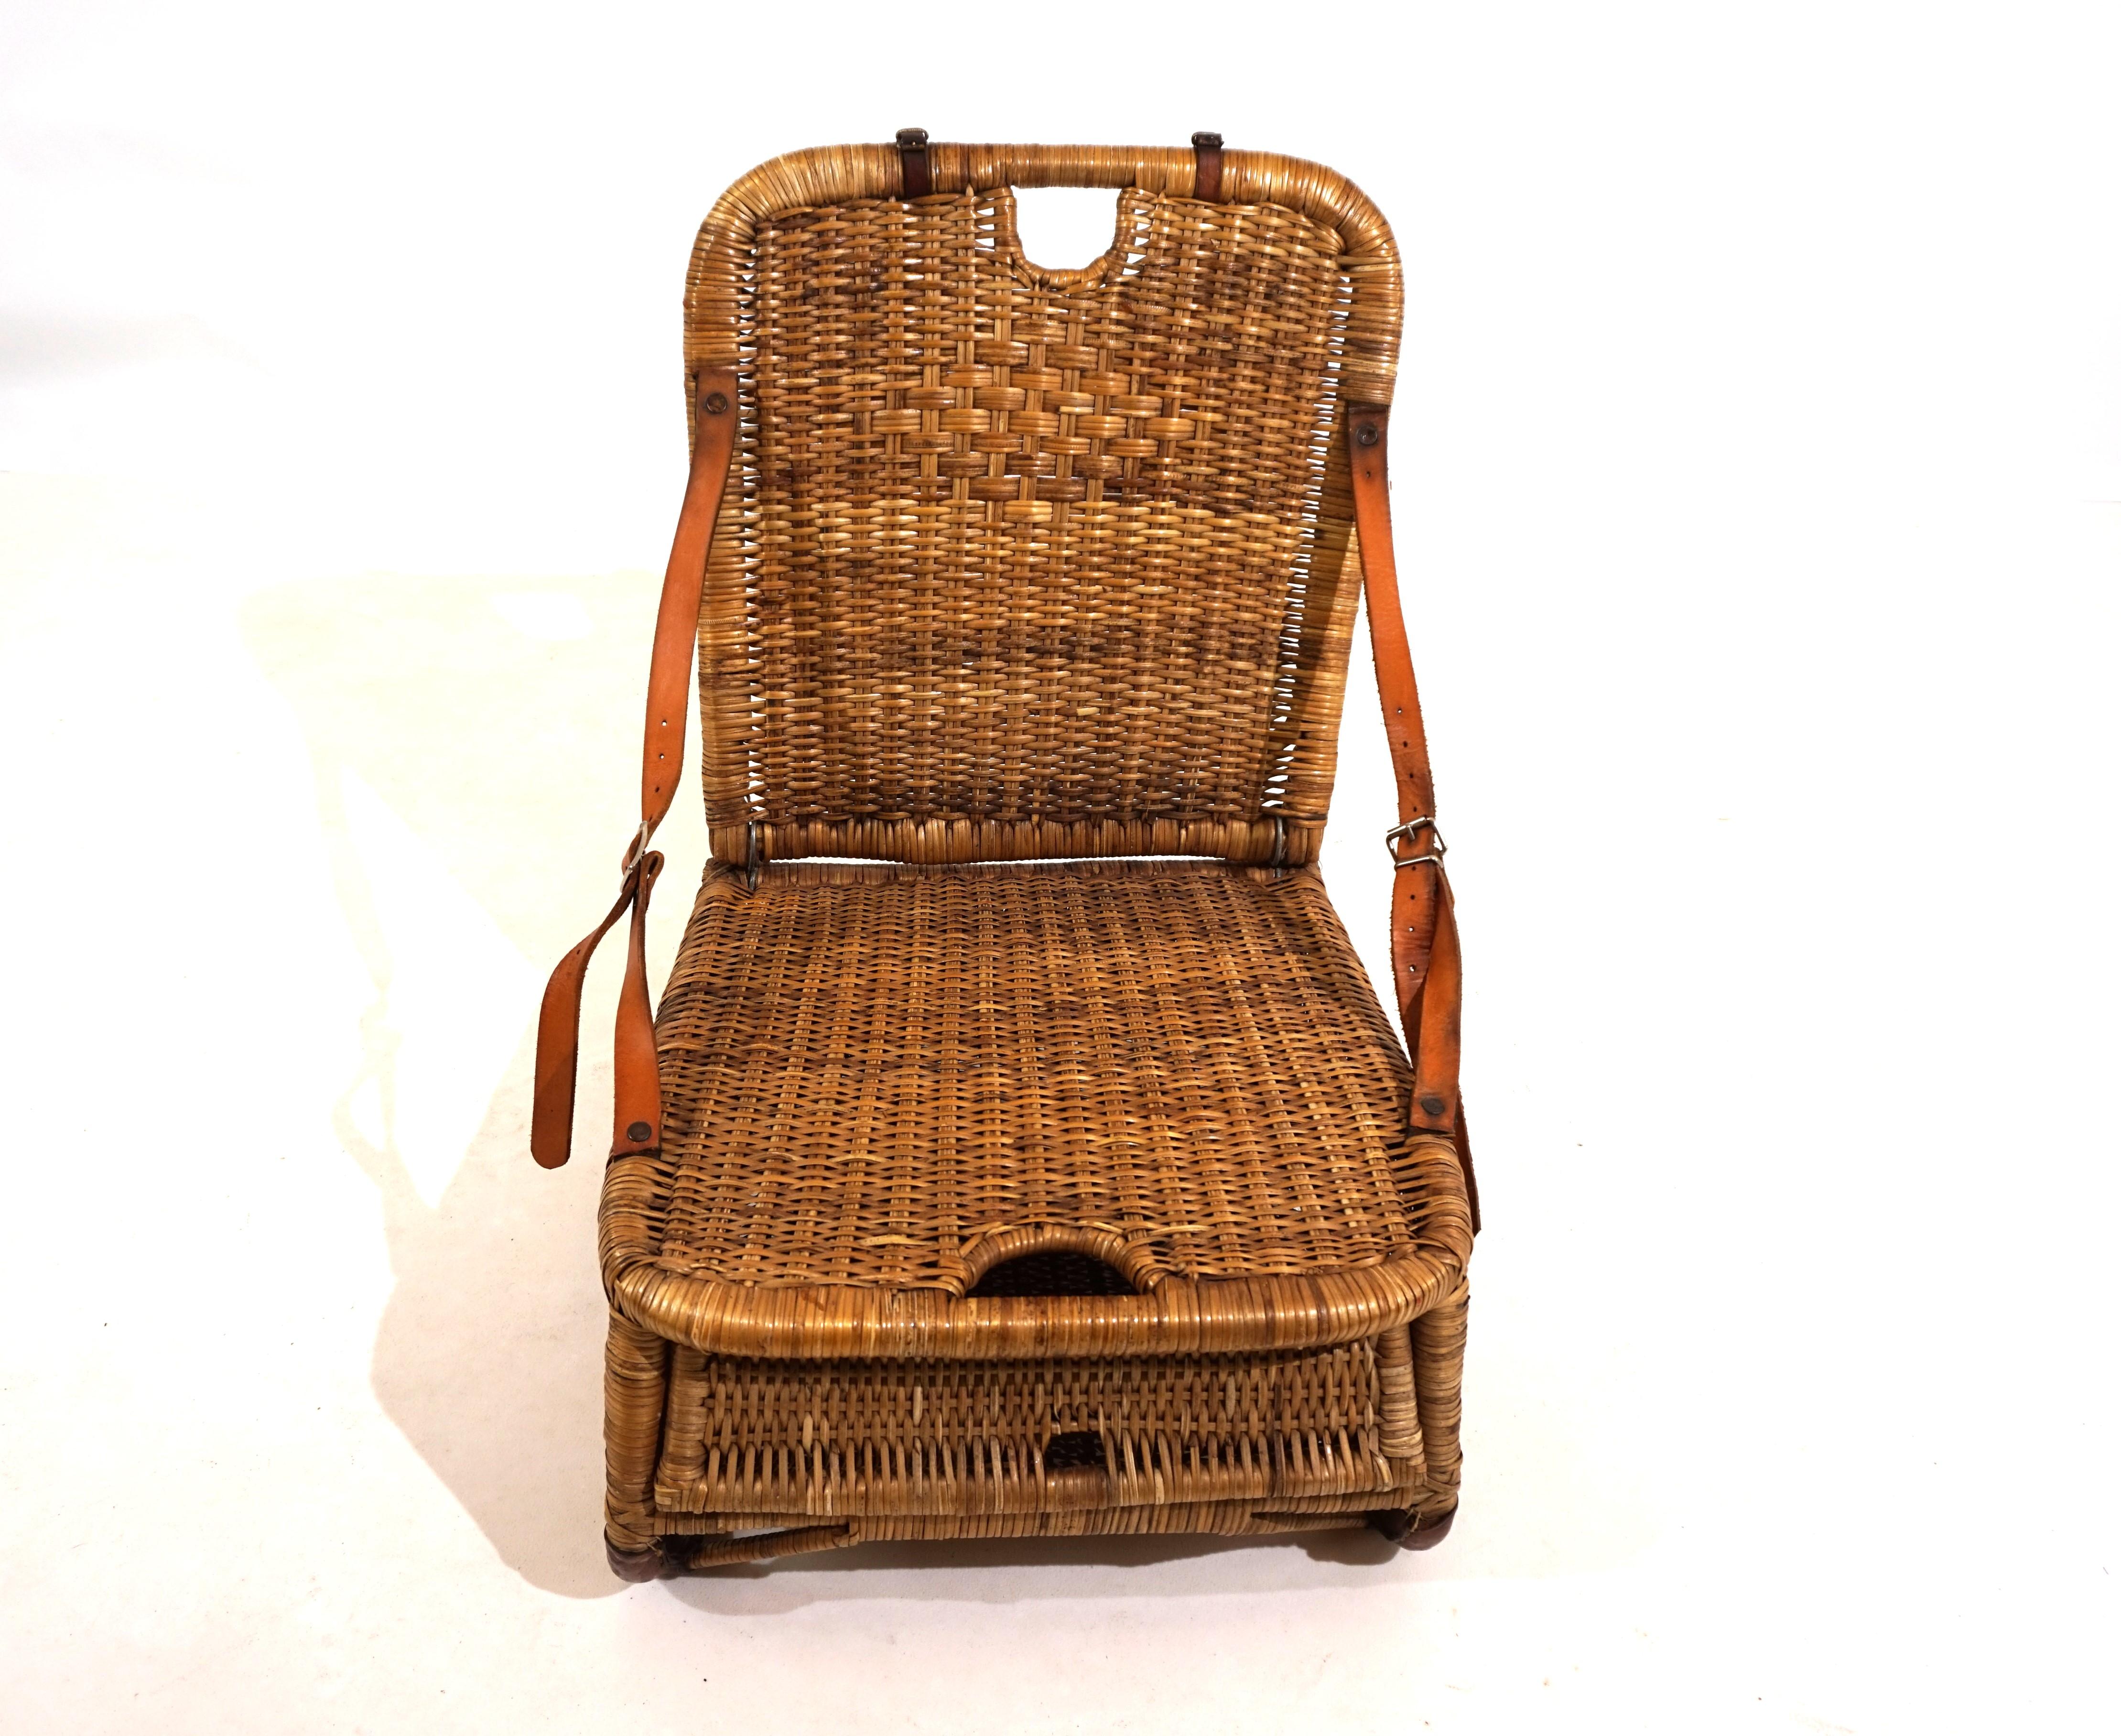 Rattan English vintage rattan beach chair